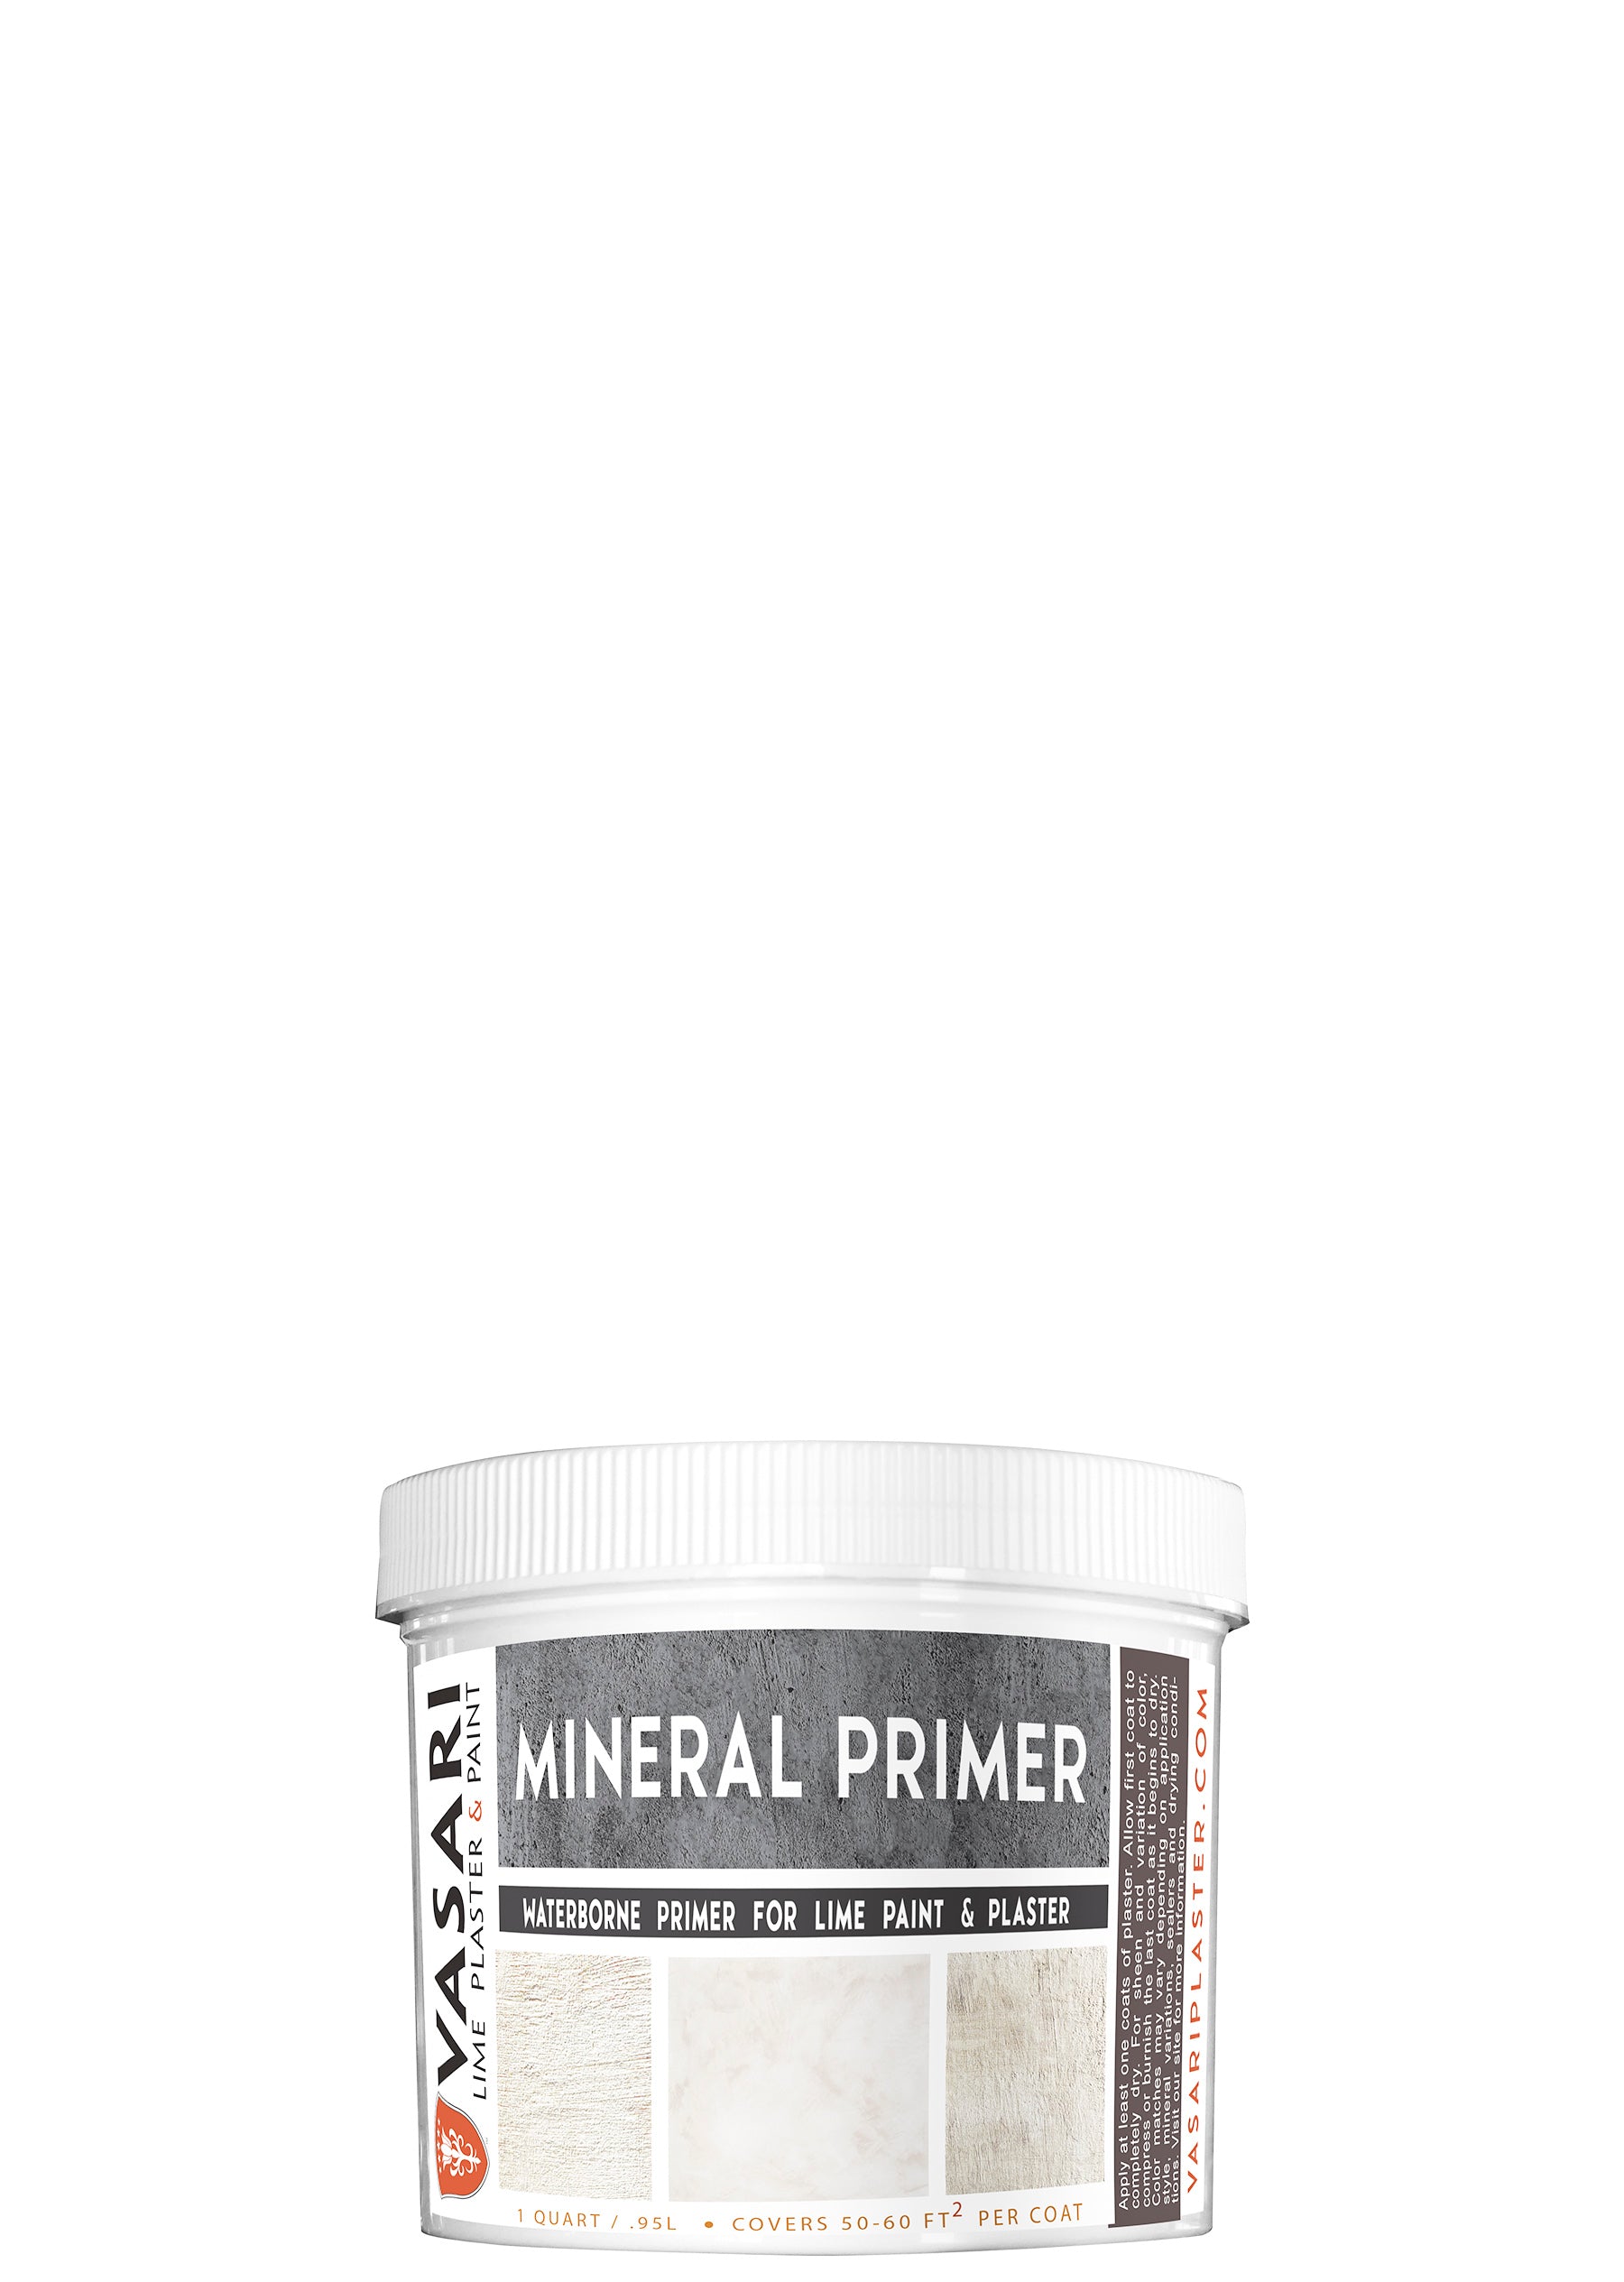 Shop for Mineral Prime